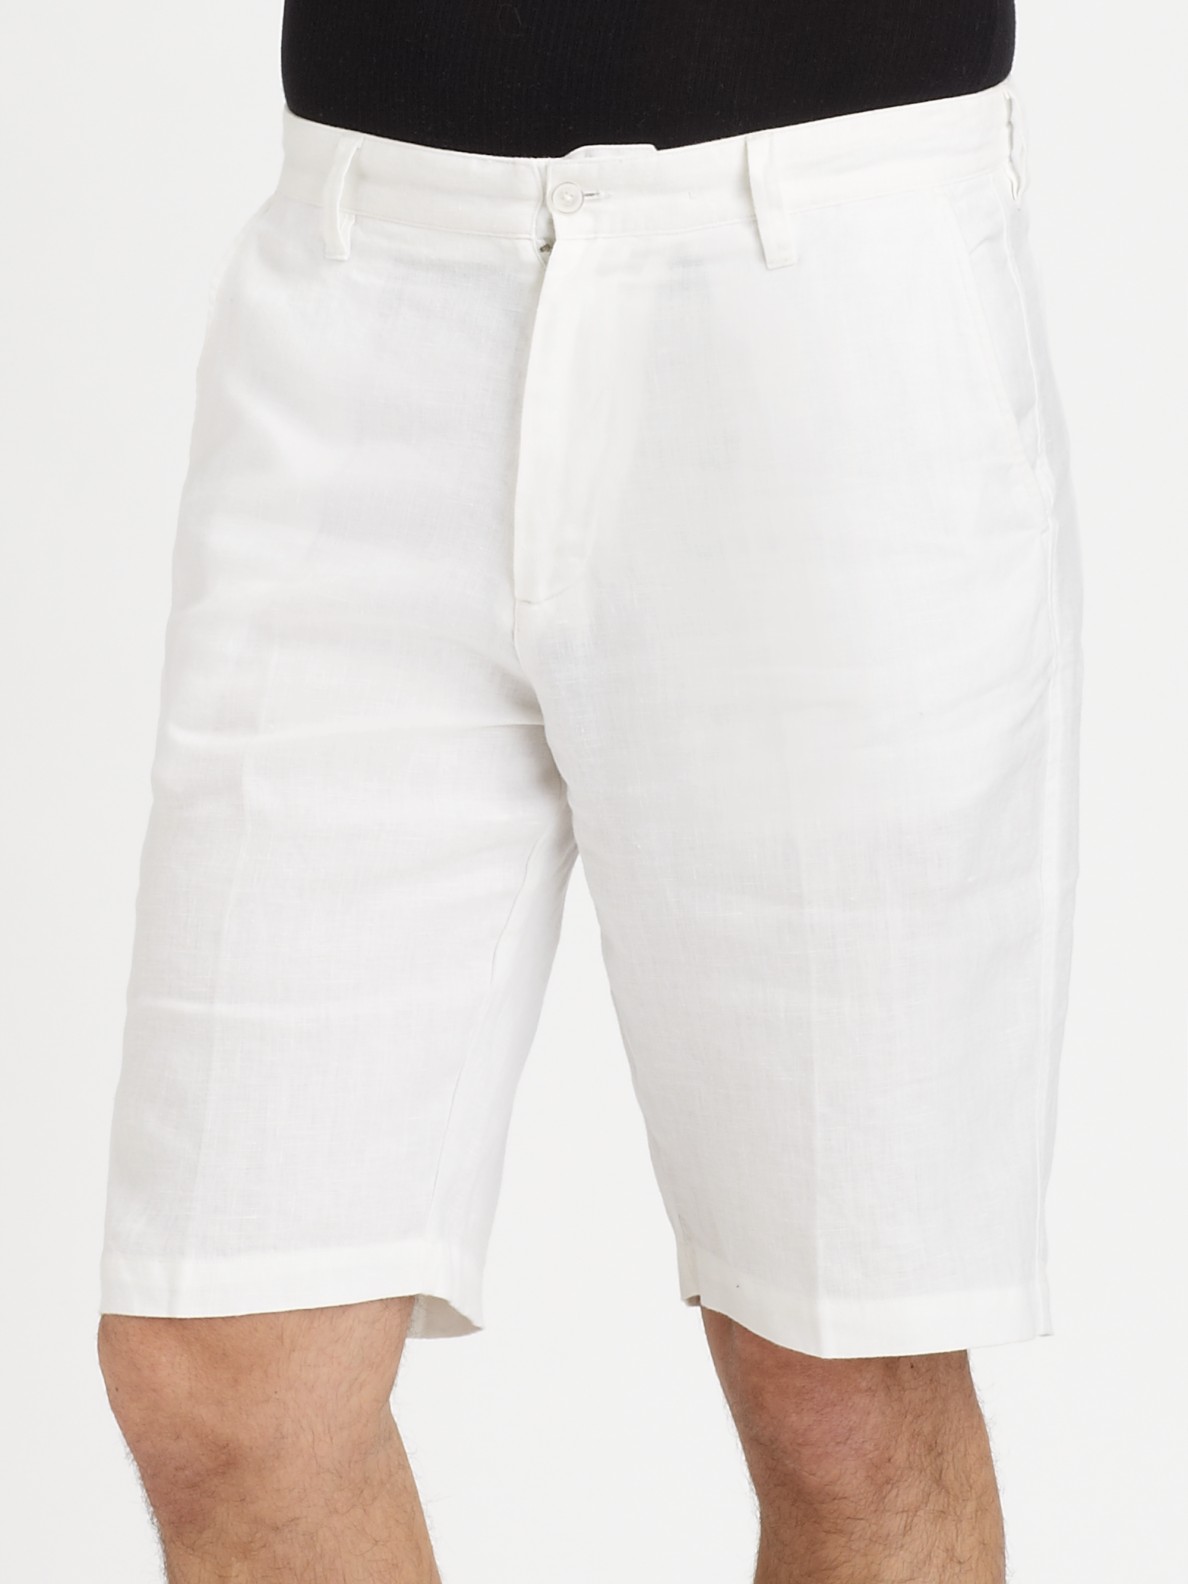 Lyst - Saks Fifth Avenue White Linen Shorts in White for Men